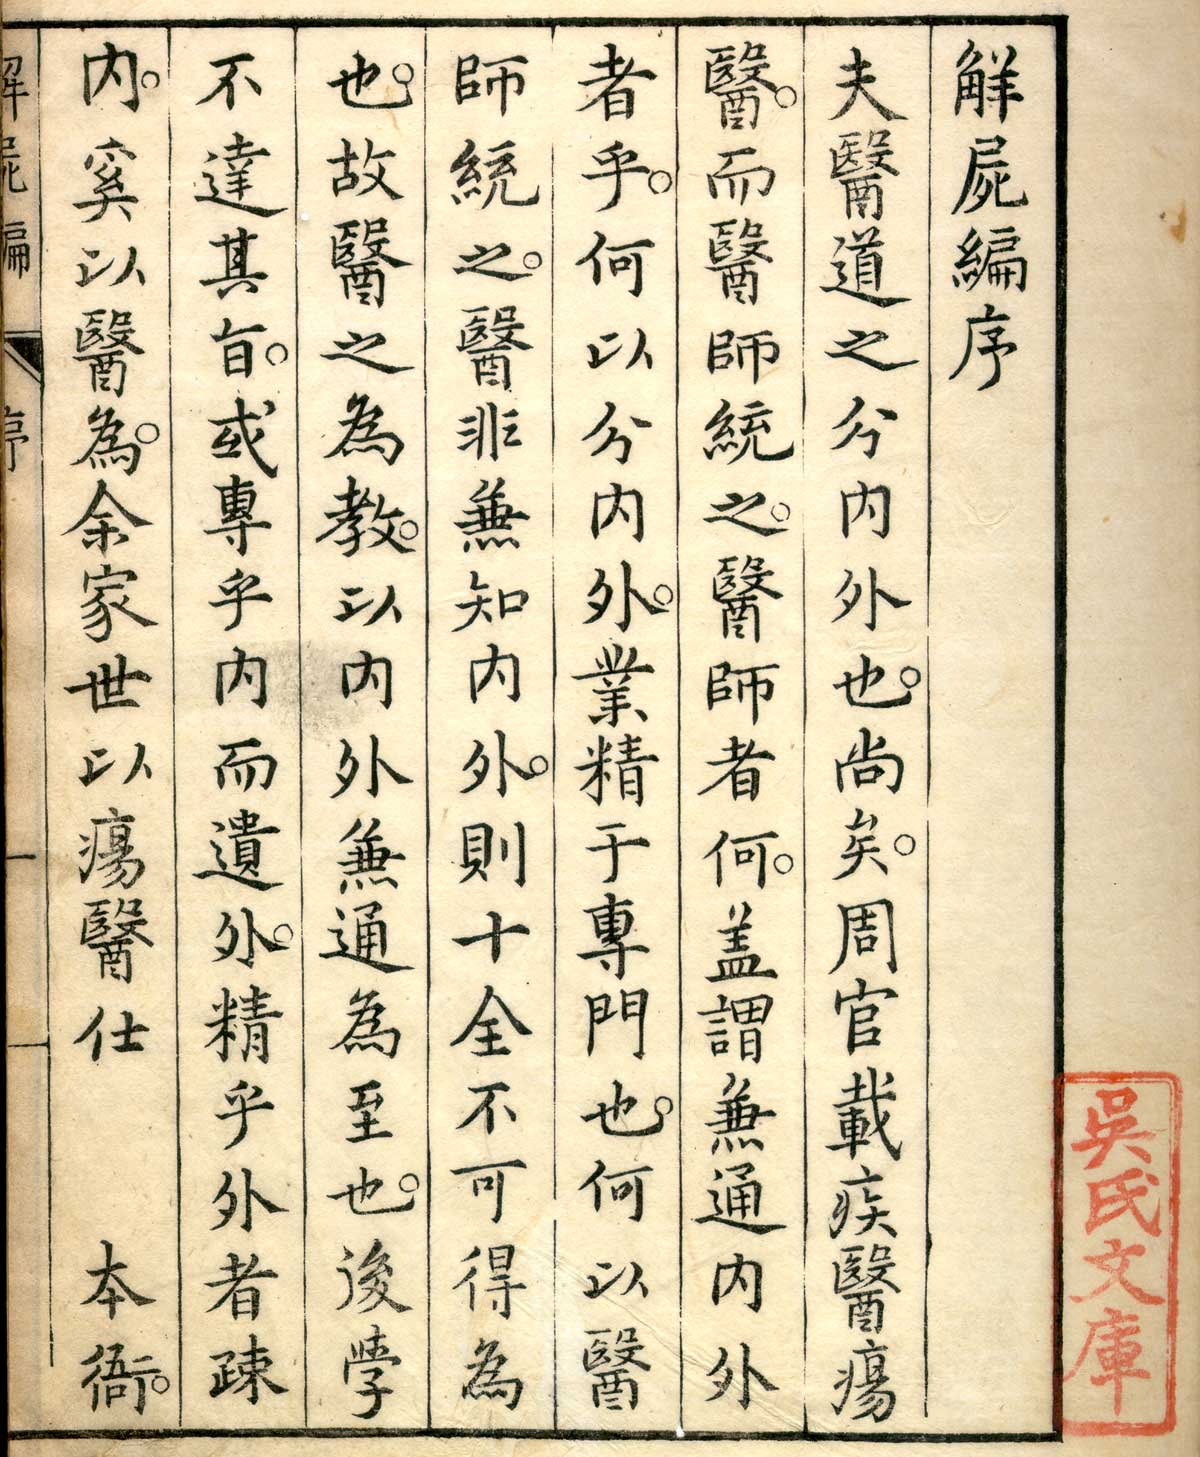 Woodcut title page of Shinnin Kawaguchi's Kaishi hen, NLM Call no.: WZ 260 K21k 1772.